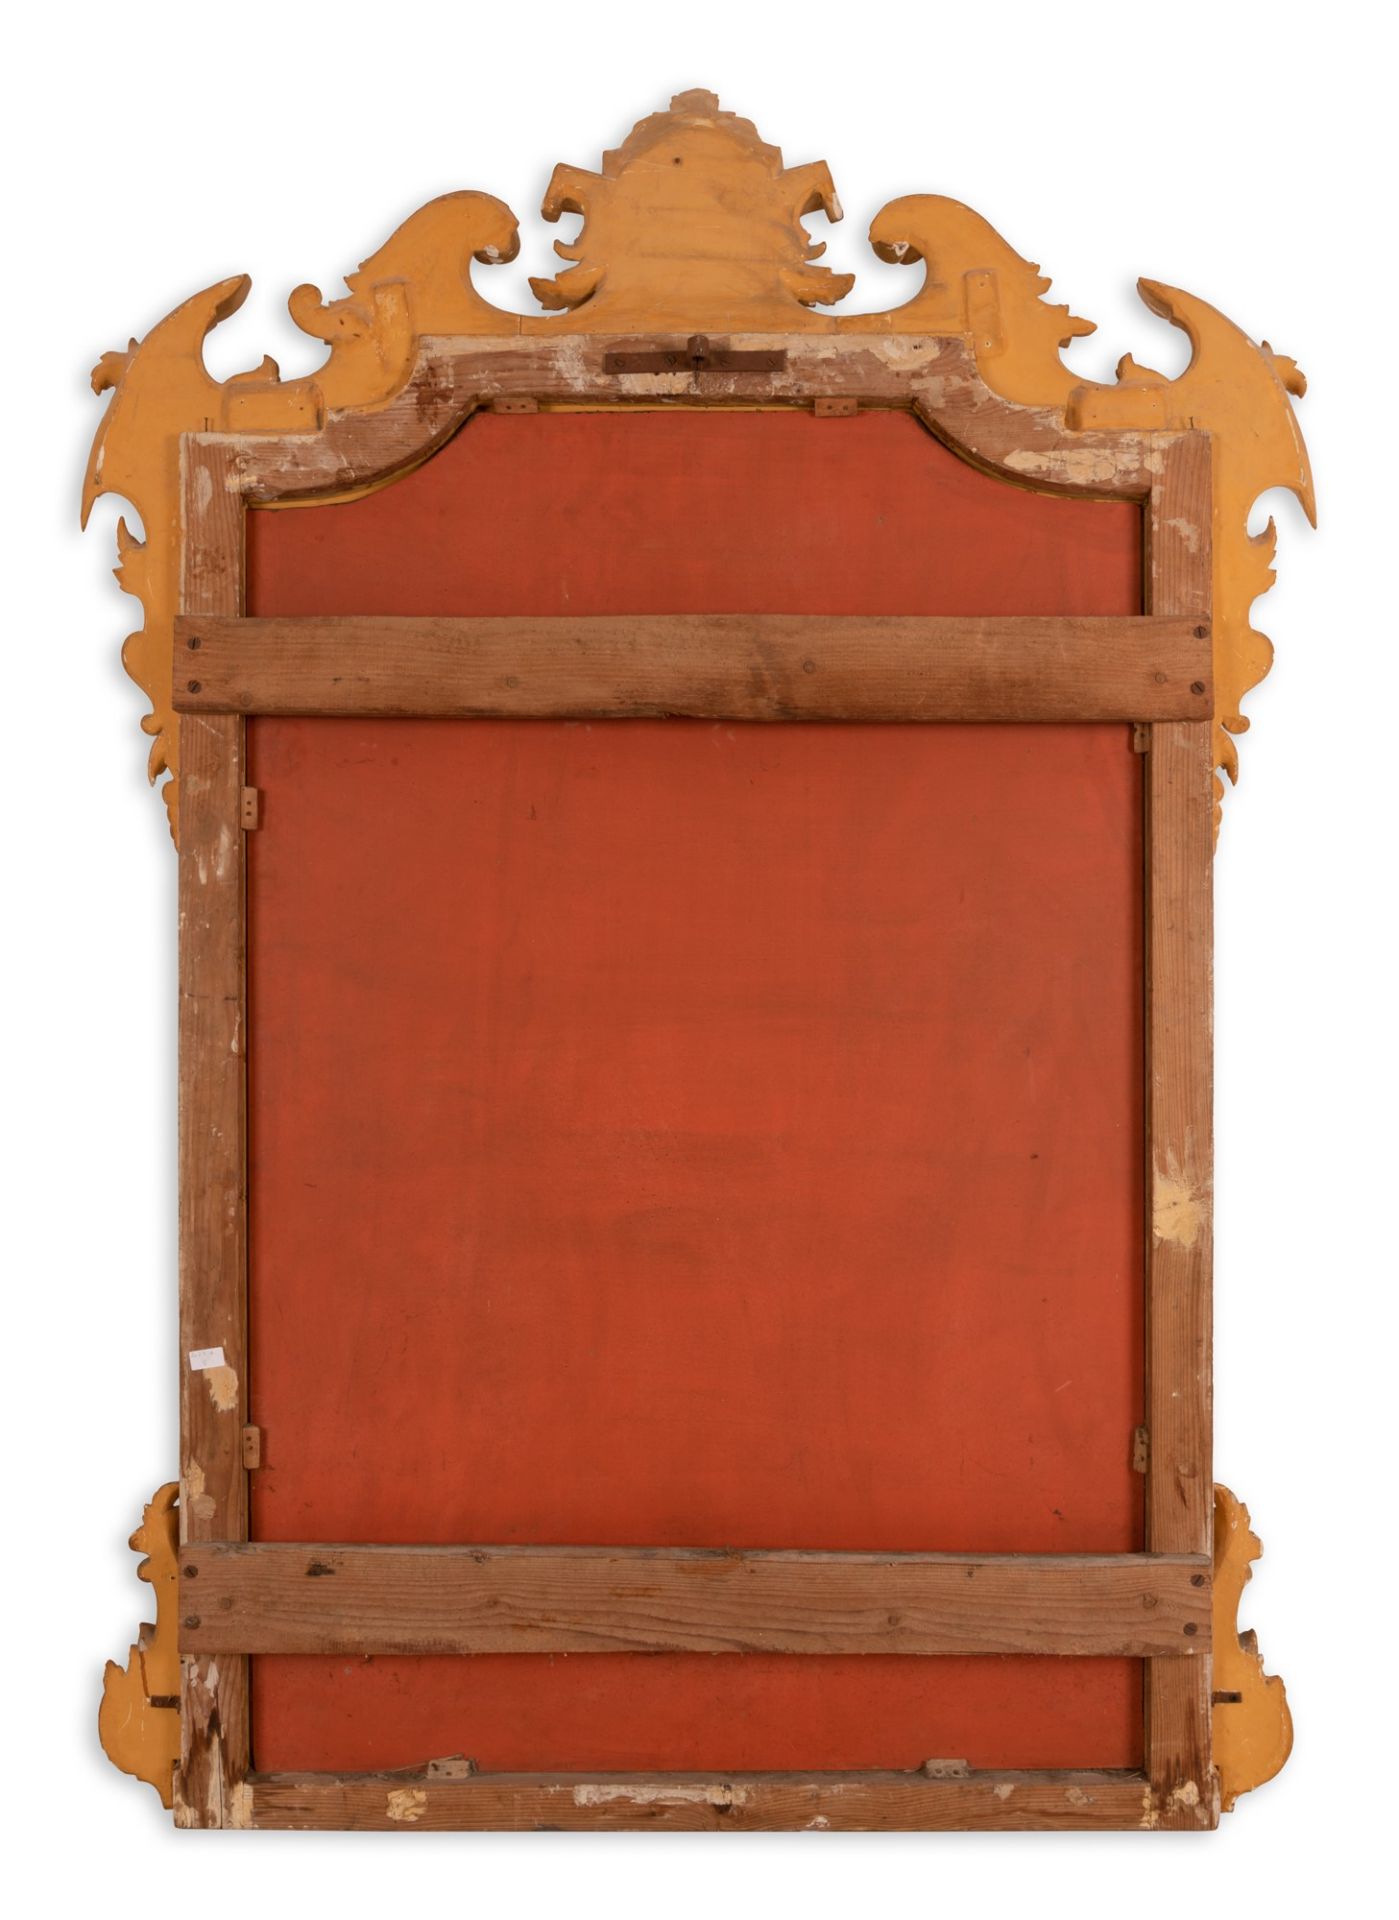 Specchiera in legno dorato con cimasa intagliata - Image 2 of 3